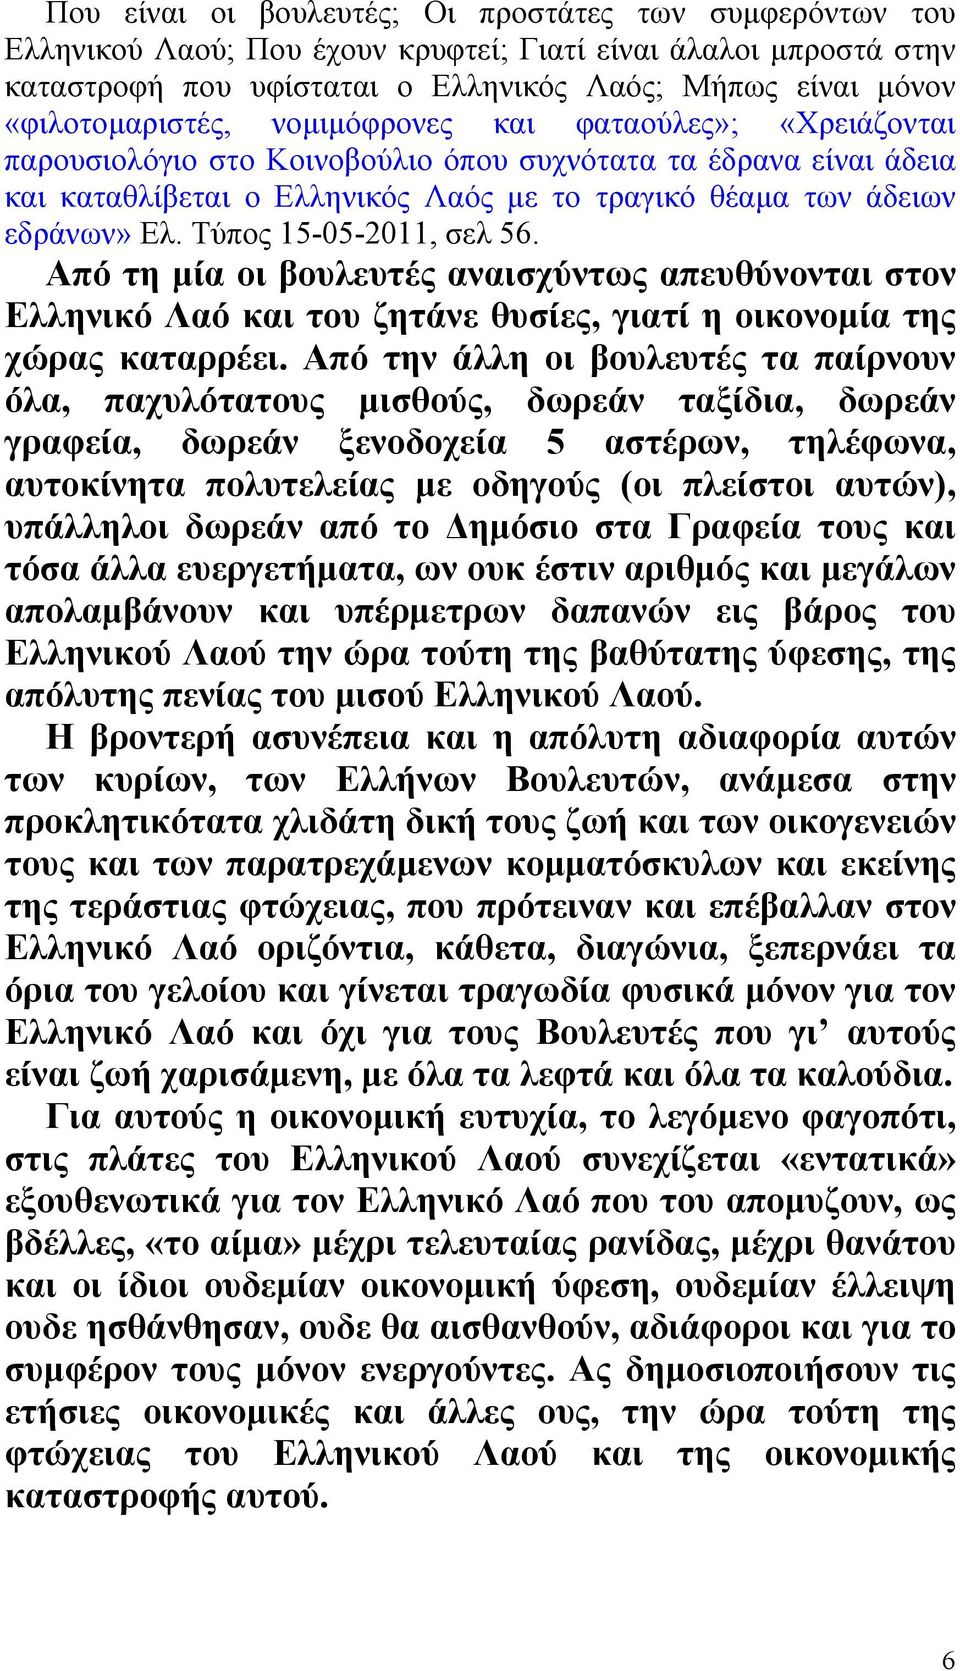 Ελ. Τύπος 15-05-2011, σελ 56. Από τη µία οι βουλευτές αναισχύντως απευθύνονται στον Ελληνικό Λαό και του ζητάνε θυσίες, γιατί η οικονοµία της χώρας καταρρέει.